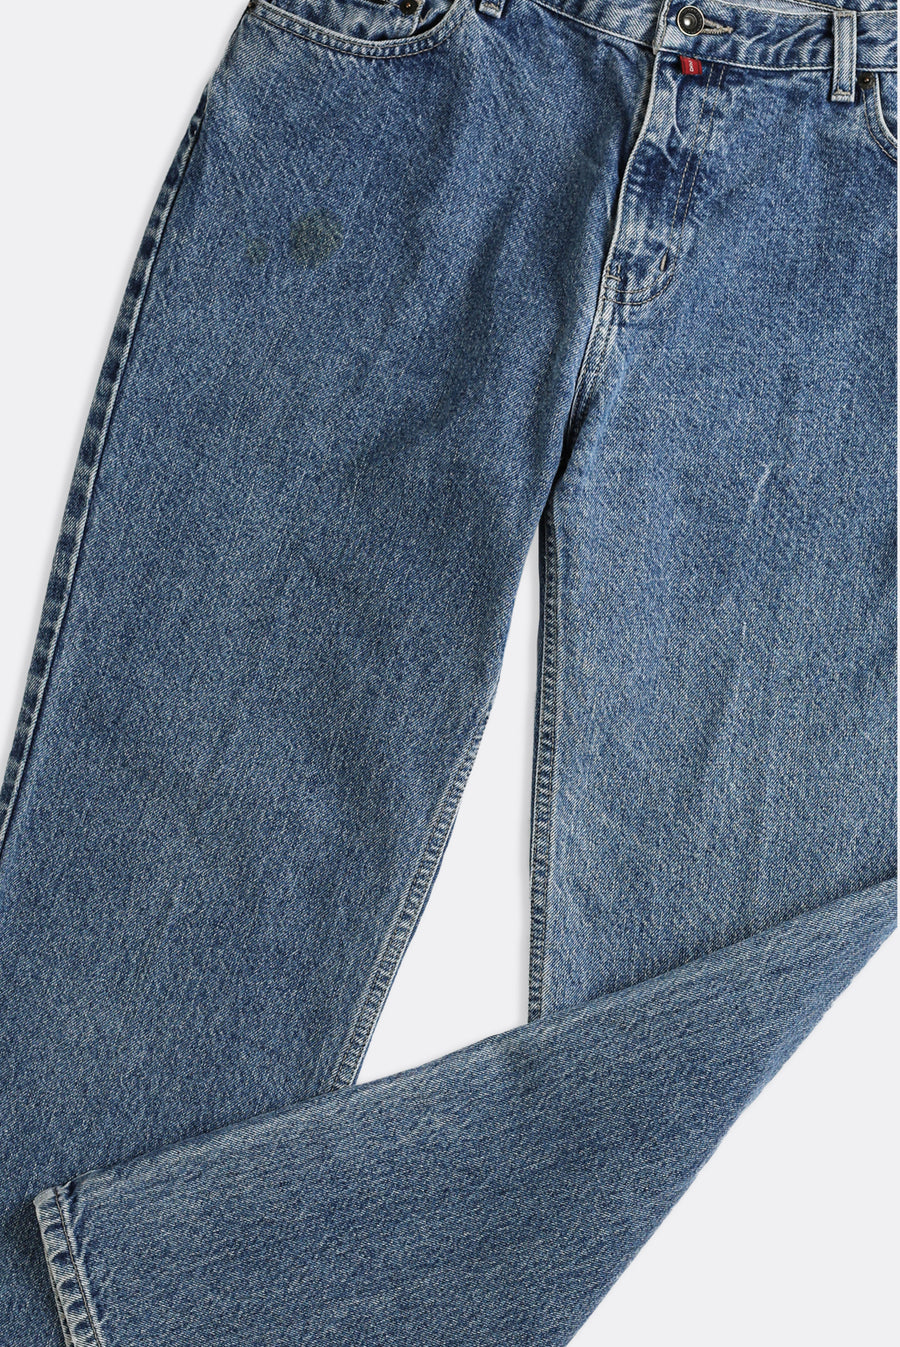 Vintage DKNY Jeans - W36